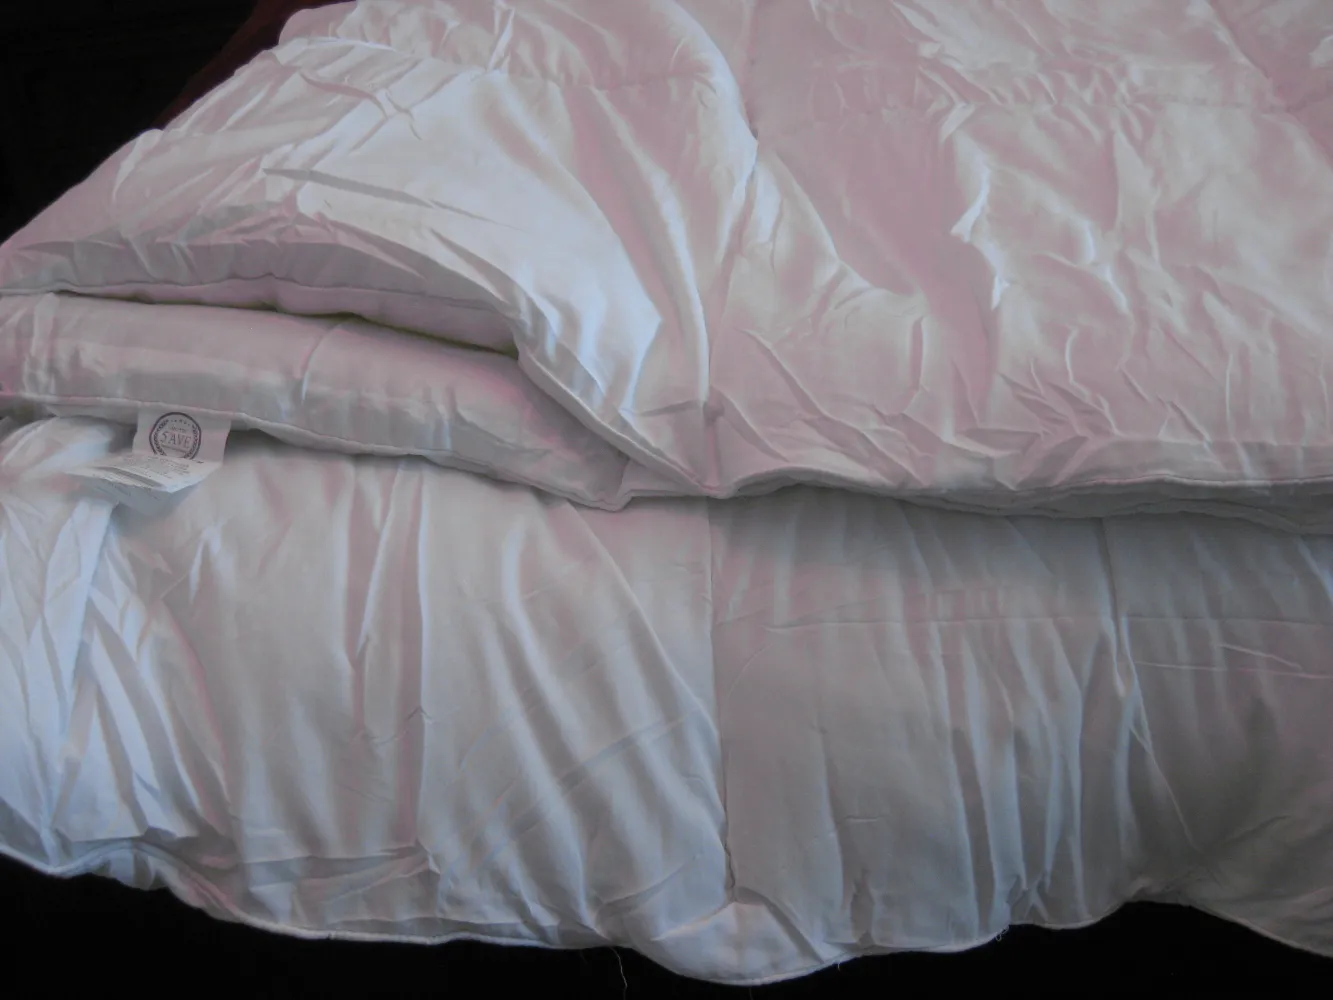 White Down Alternative Reversible Comforter